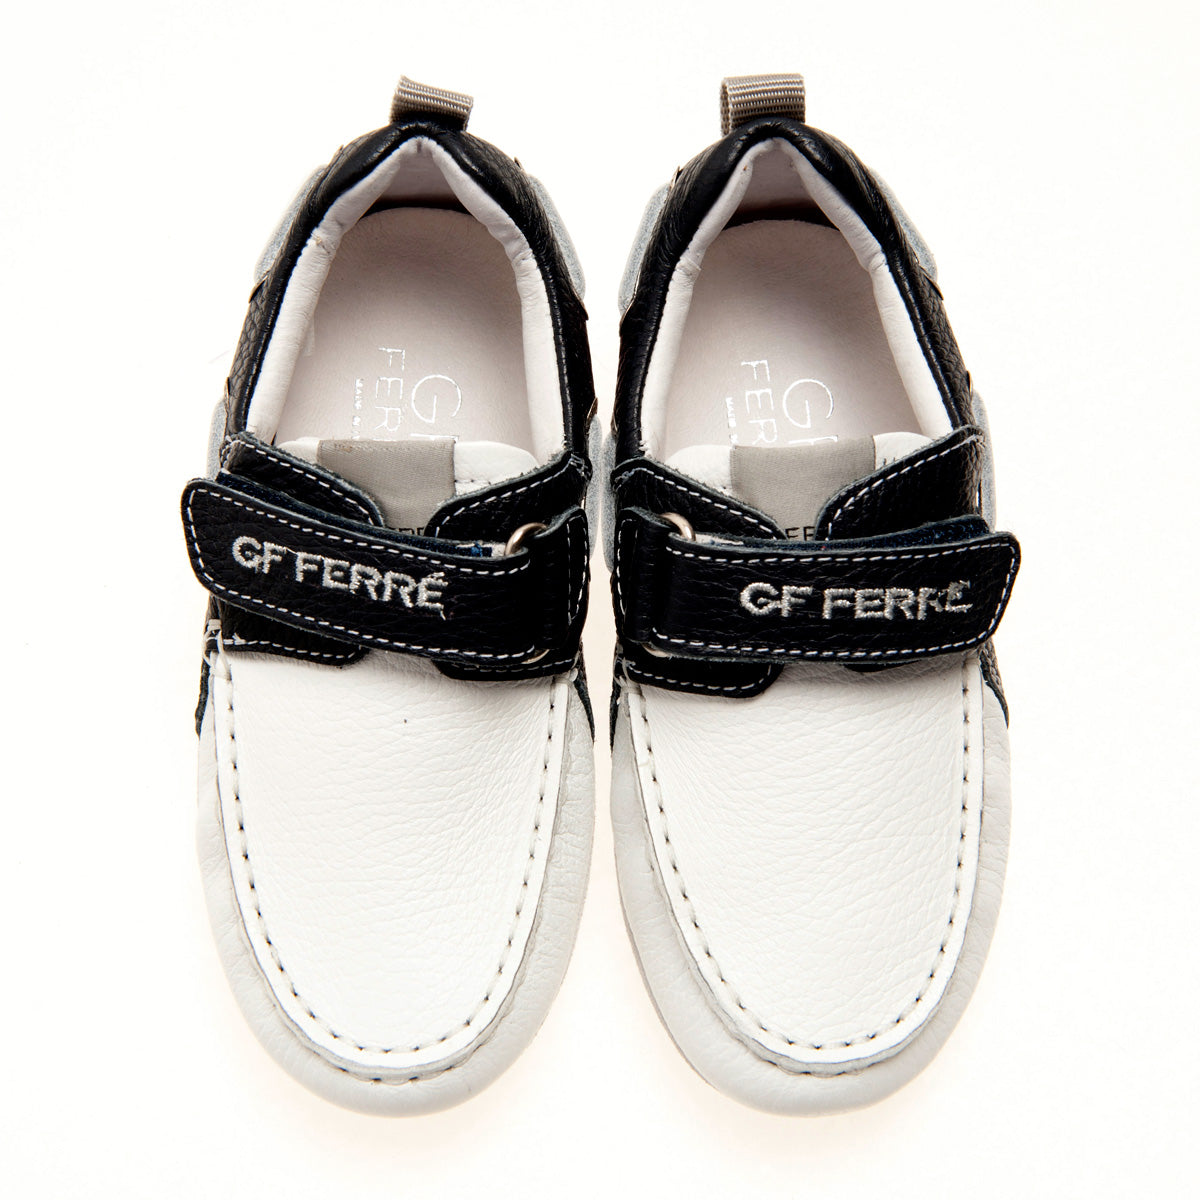 GF Ferre Shoes